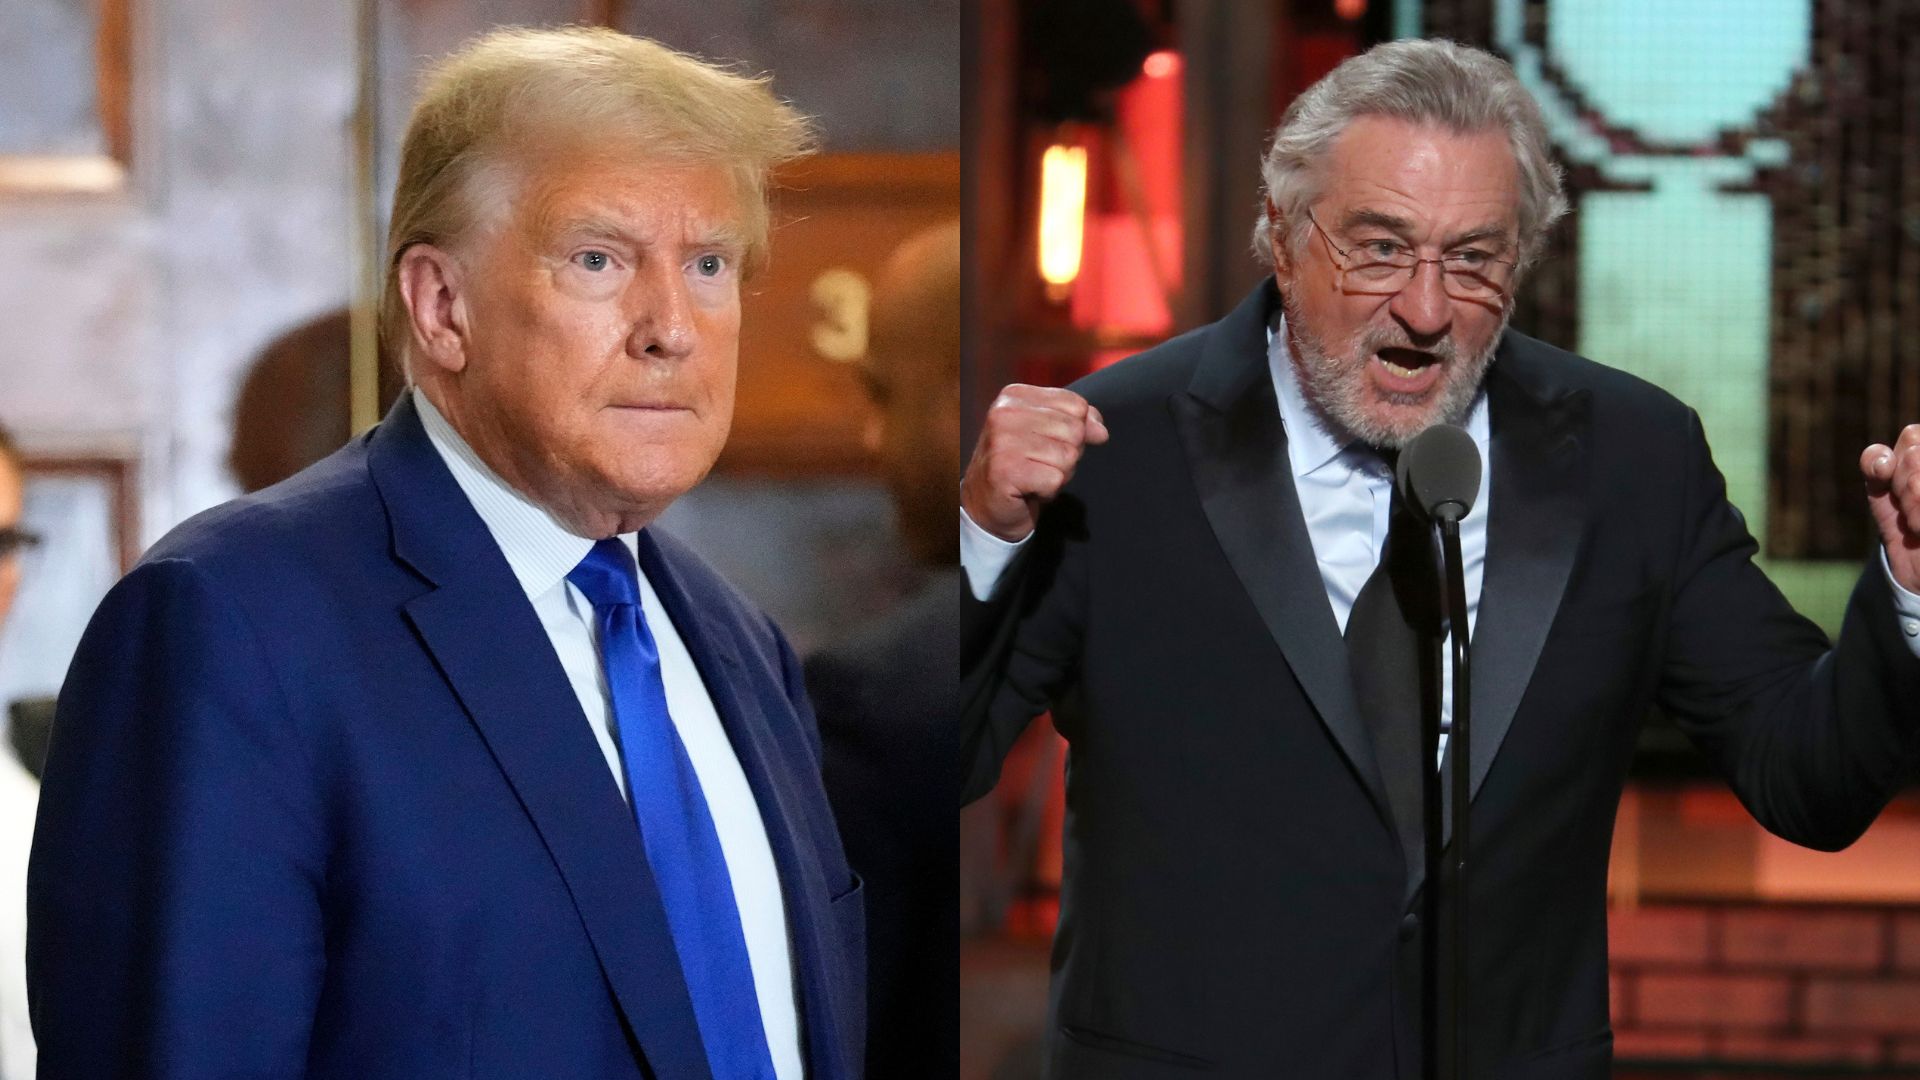 Trump Slams ‘Total Loser’ Robert De Niro For Attacking Him During Gotham Awards Speech Debacle